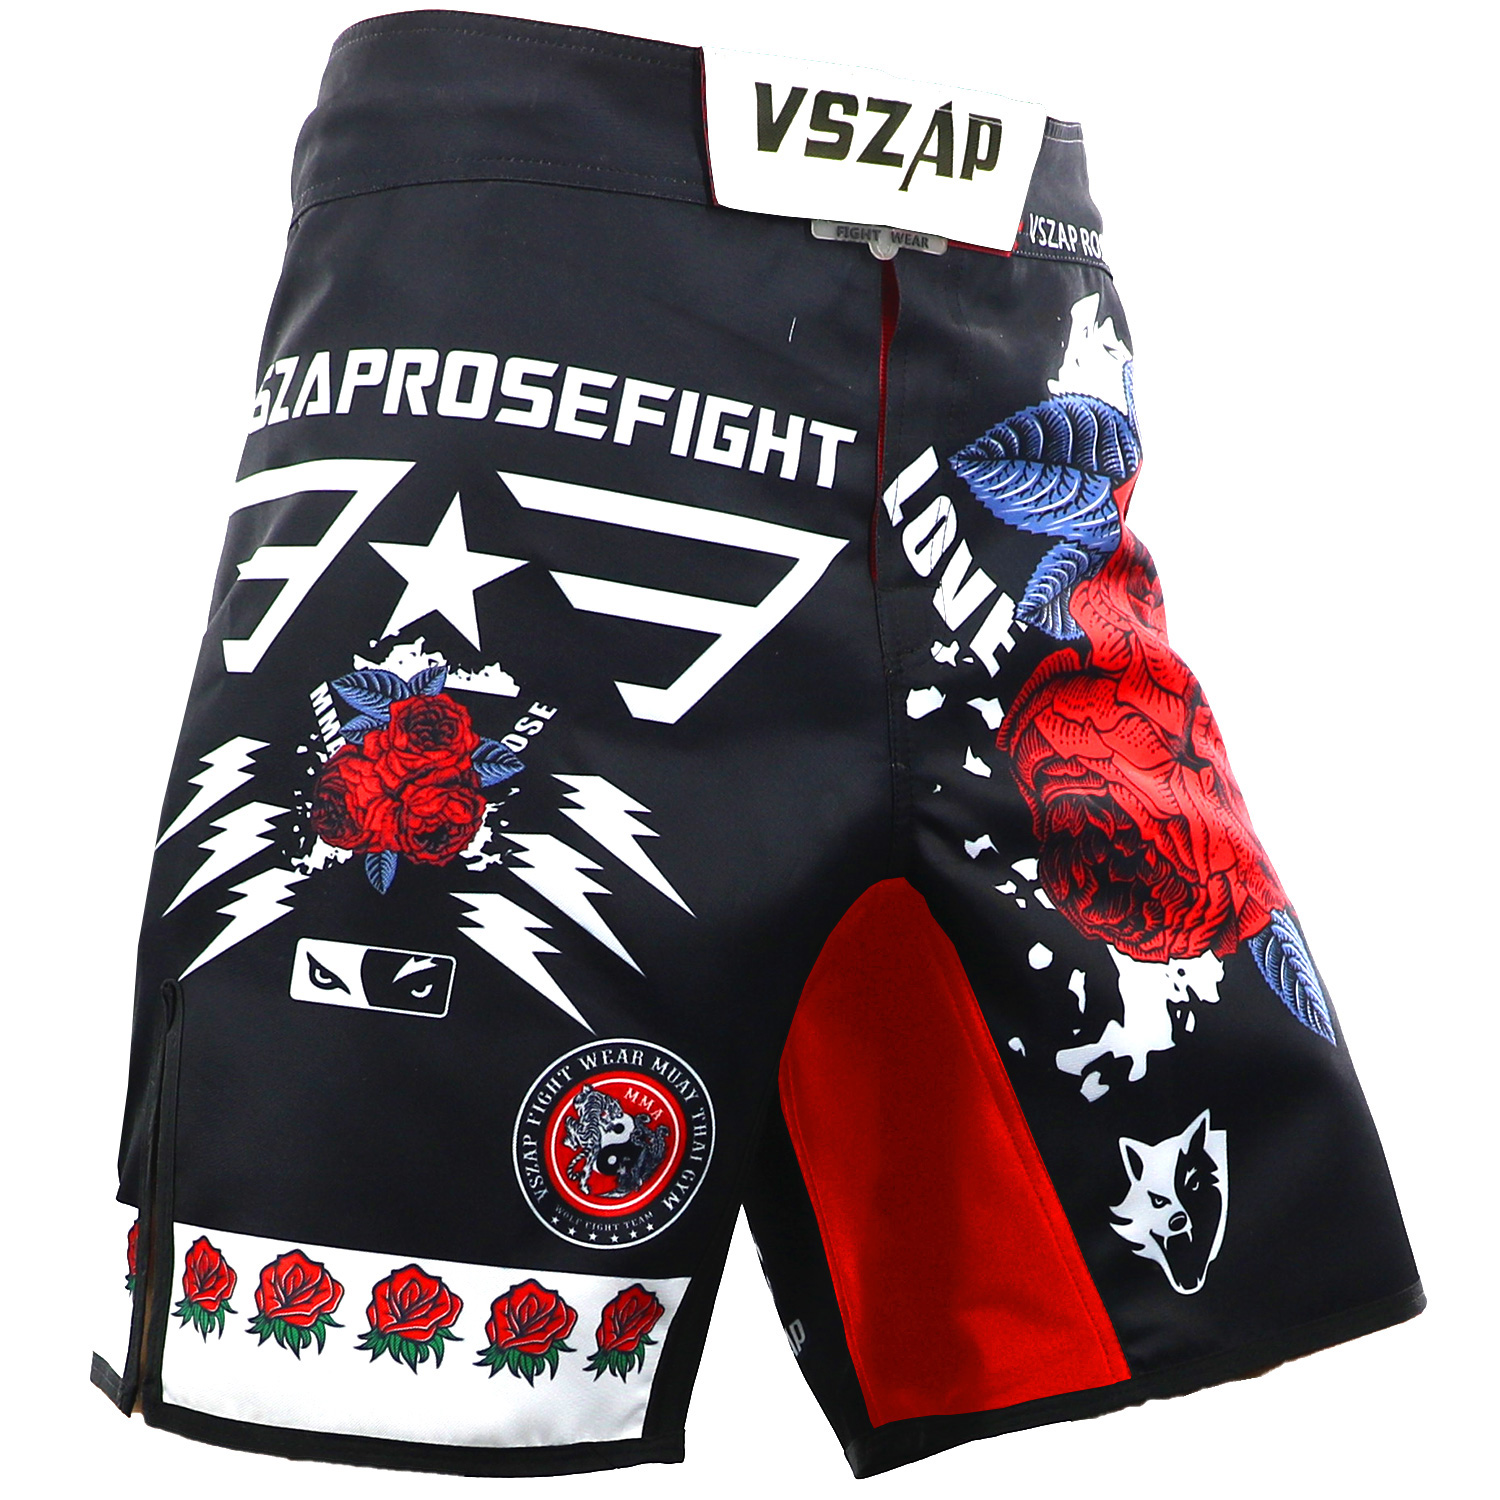 VSZAP Rose MMA Shorts Kick Boxing Muay Thai Shorts Trunks BJJ Training Fitness Shorts Sanda Boxe Fight Wear Grappling Mma Pants